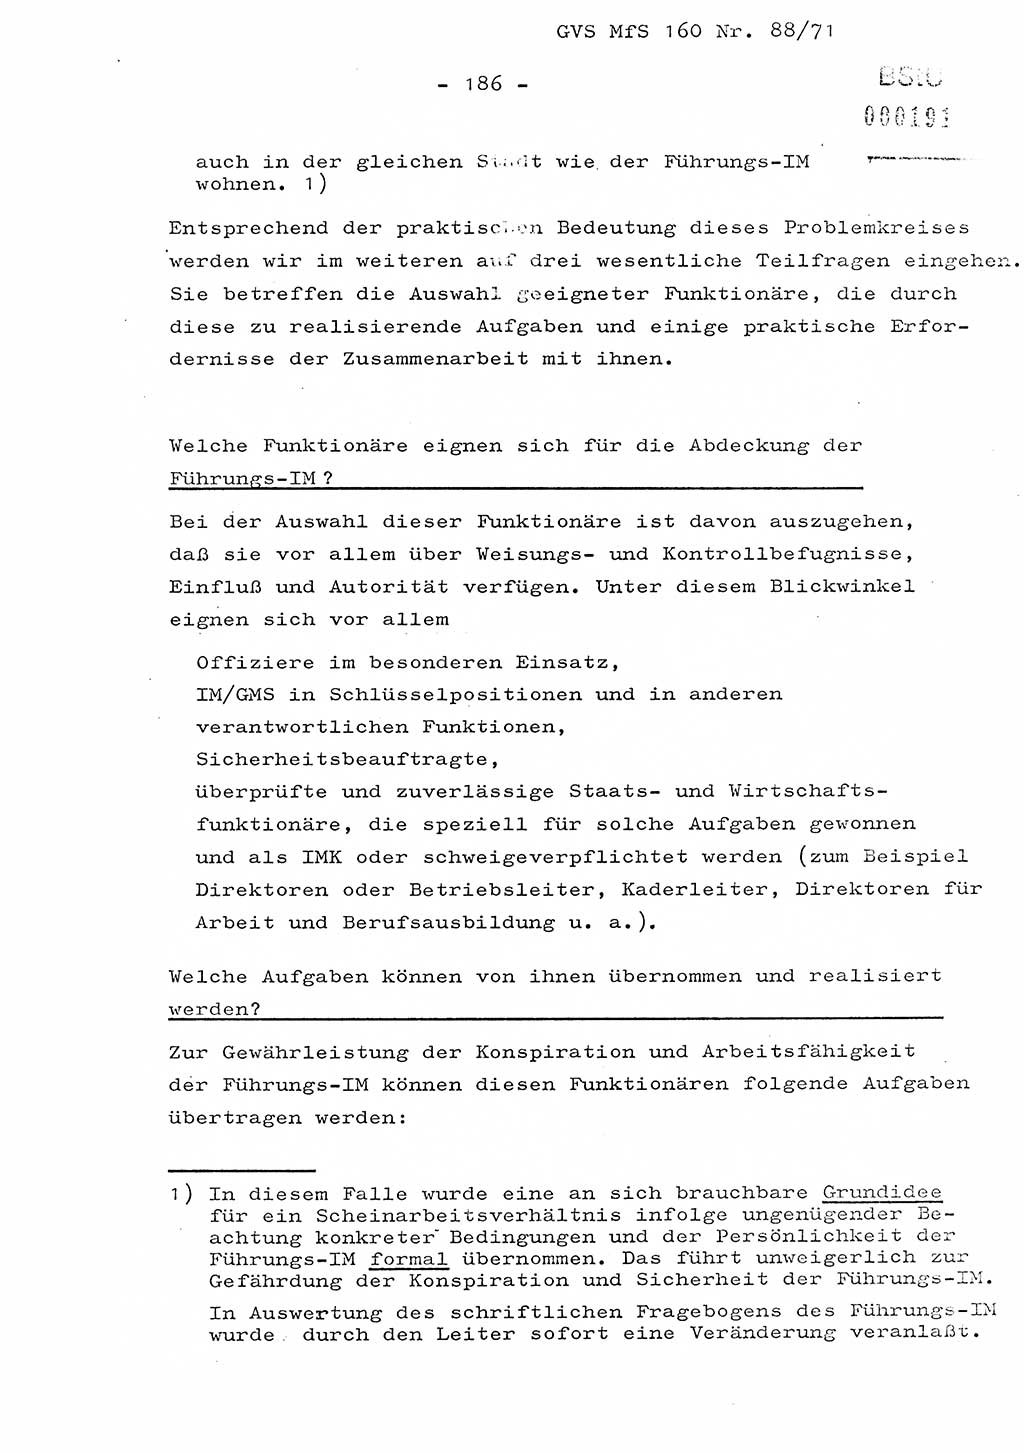 Dissertation Oberstleutnant Josef Schwarz (BV Schwerin), Major Fritz Amm (JHS), Hauptmann Peter Gräßler (JHS), Ministerium für Staatssicherheit (MfS) [Deutsche Demokratische Republik (DDR)], Juristische Hochschule (JHS), Geheime Verschlußsache (GVS) 160-88/71, Potsdam 1972, Seite 186 (Diss. MfS DDR JHS GVS 160-88/71 1972, S. 186)